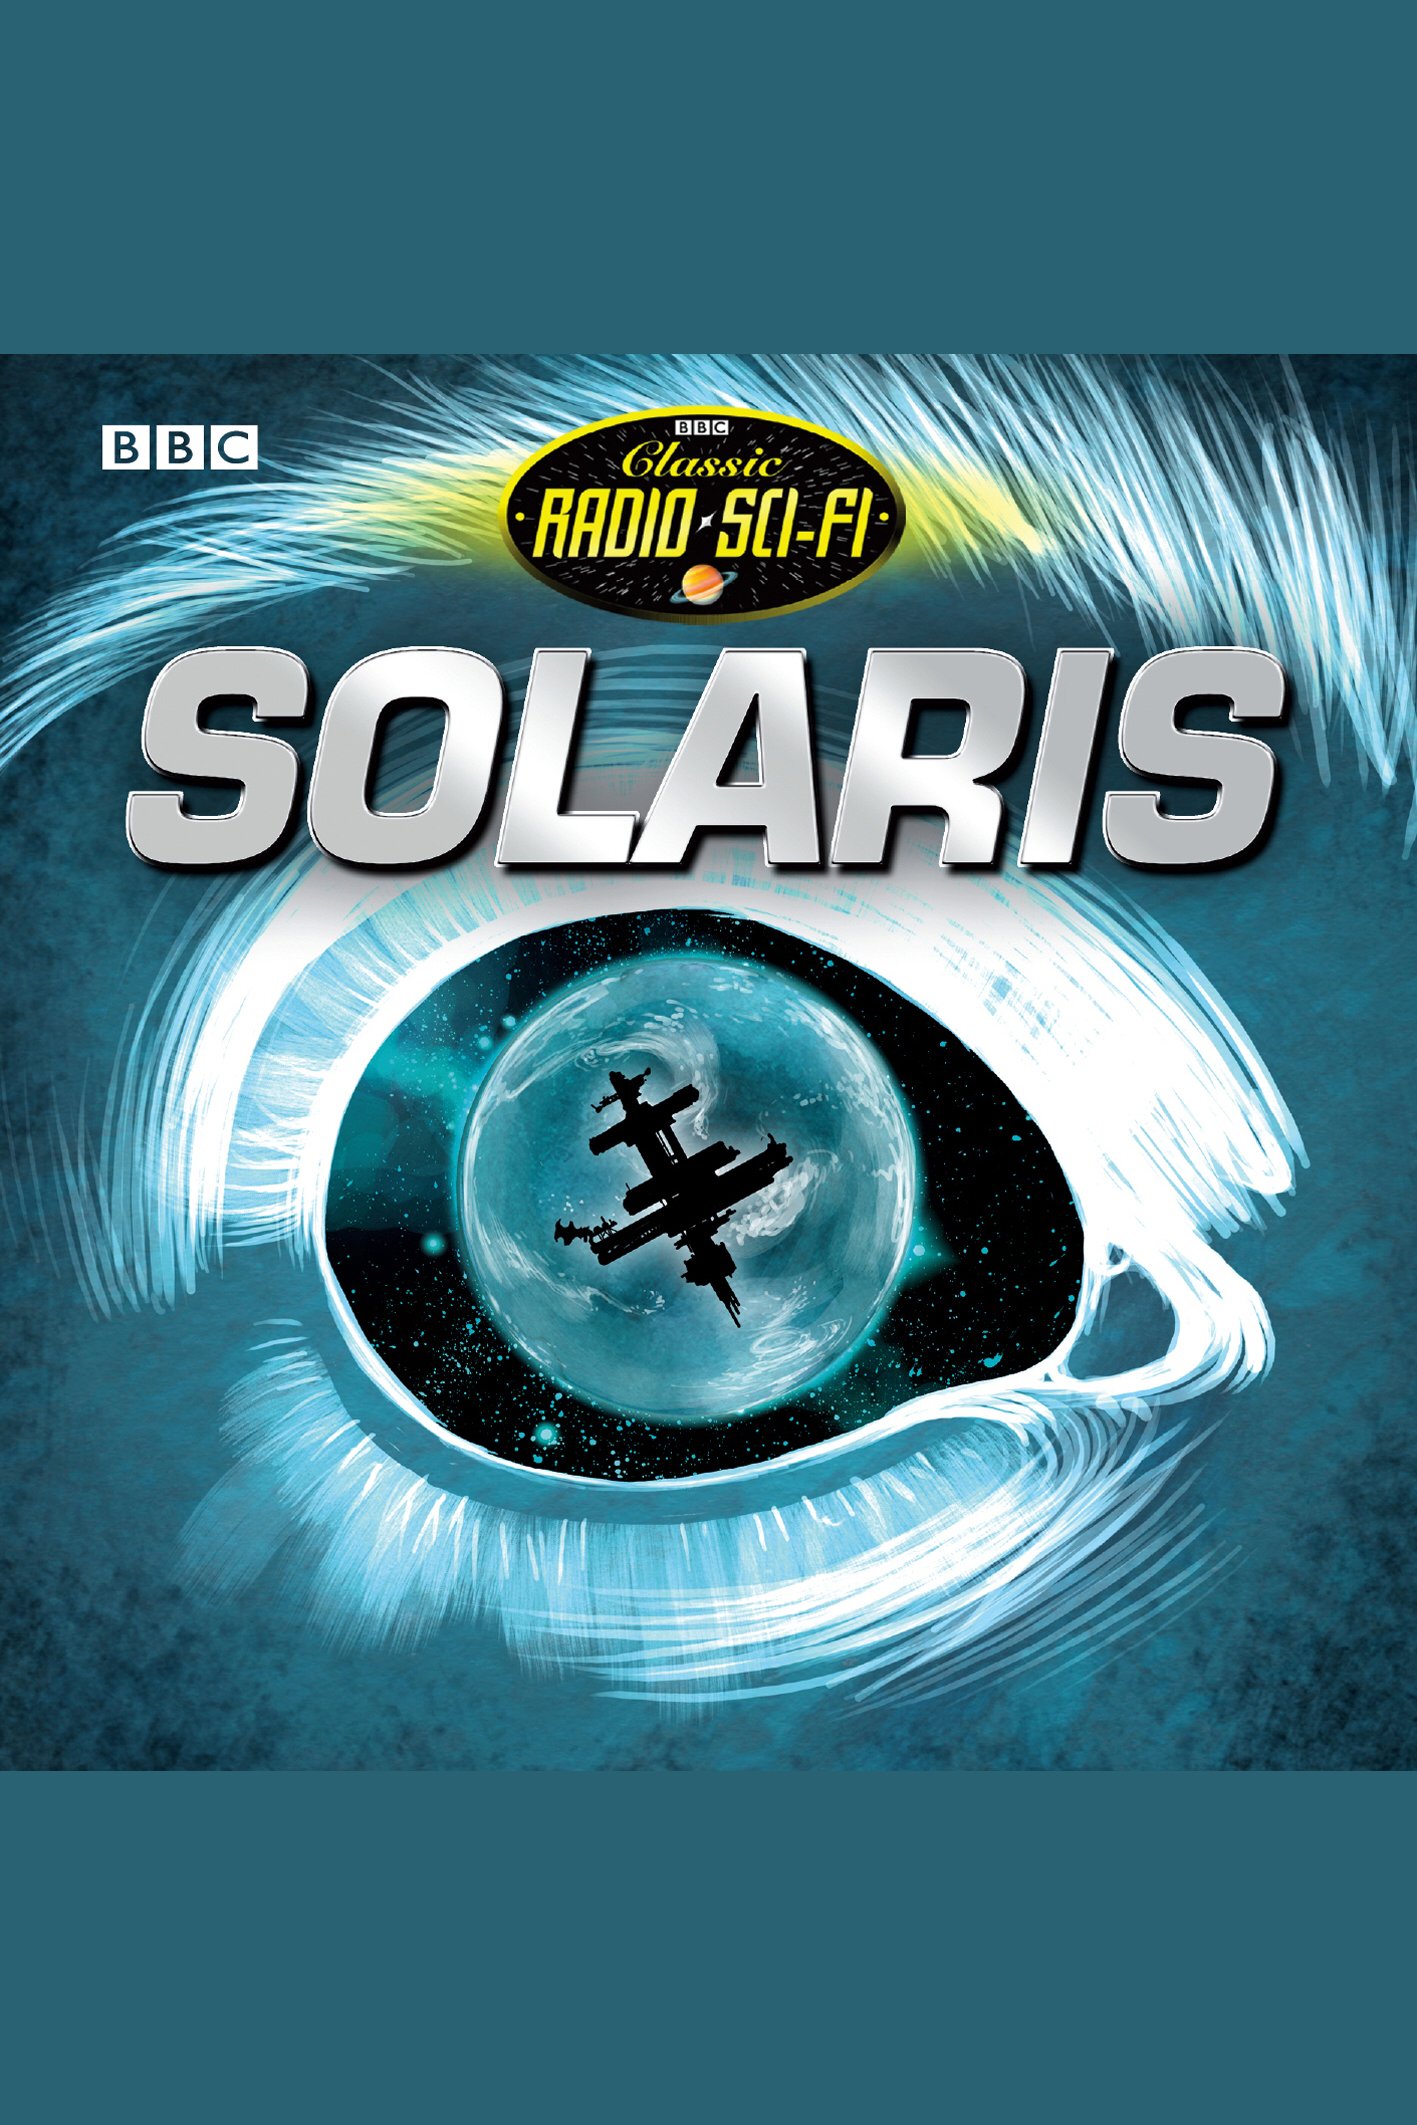 Solaris Classic Radio Sci-Fi cover image